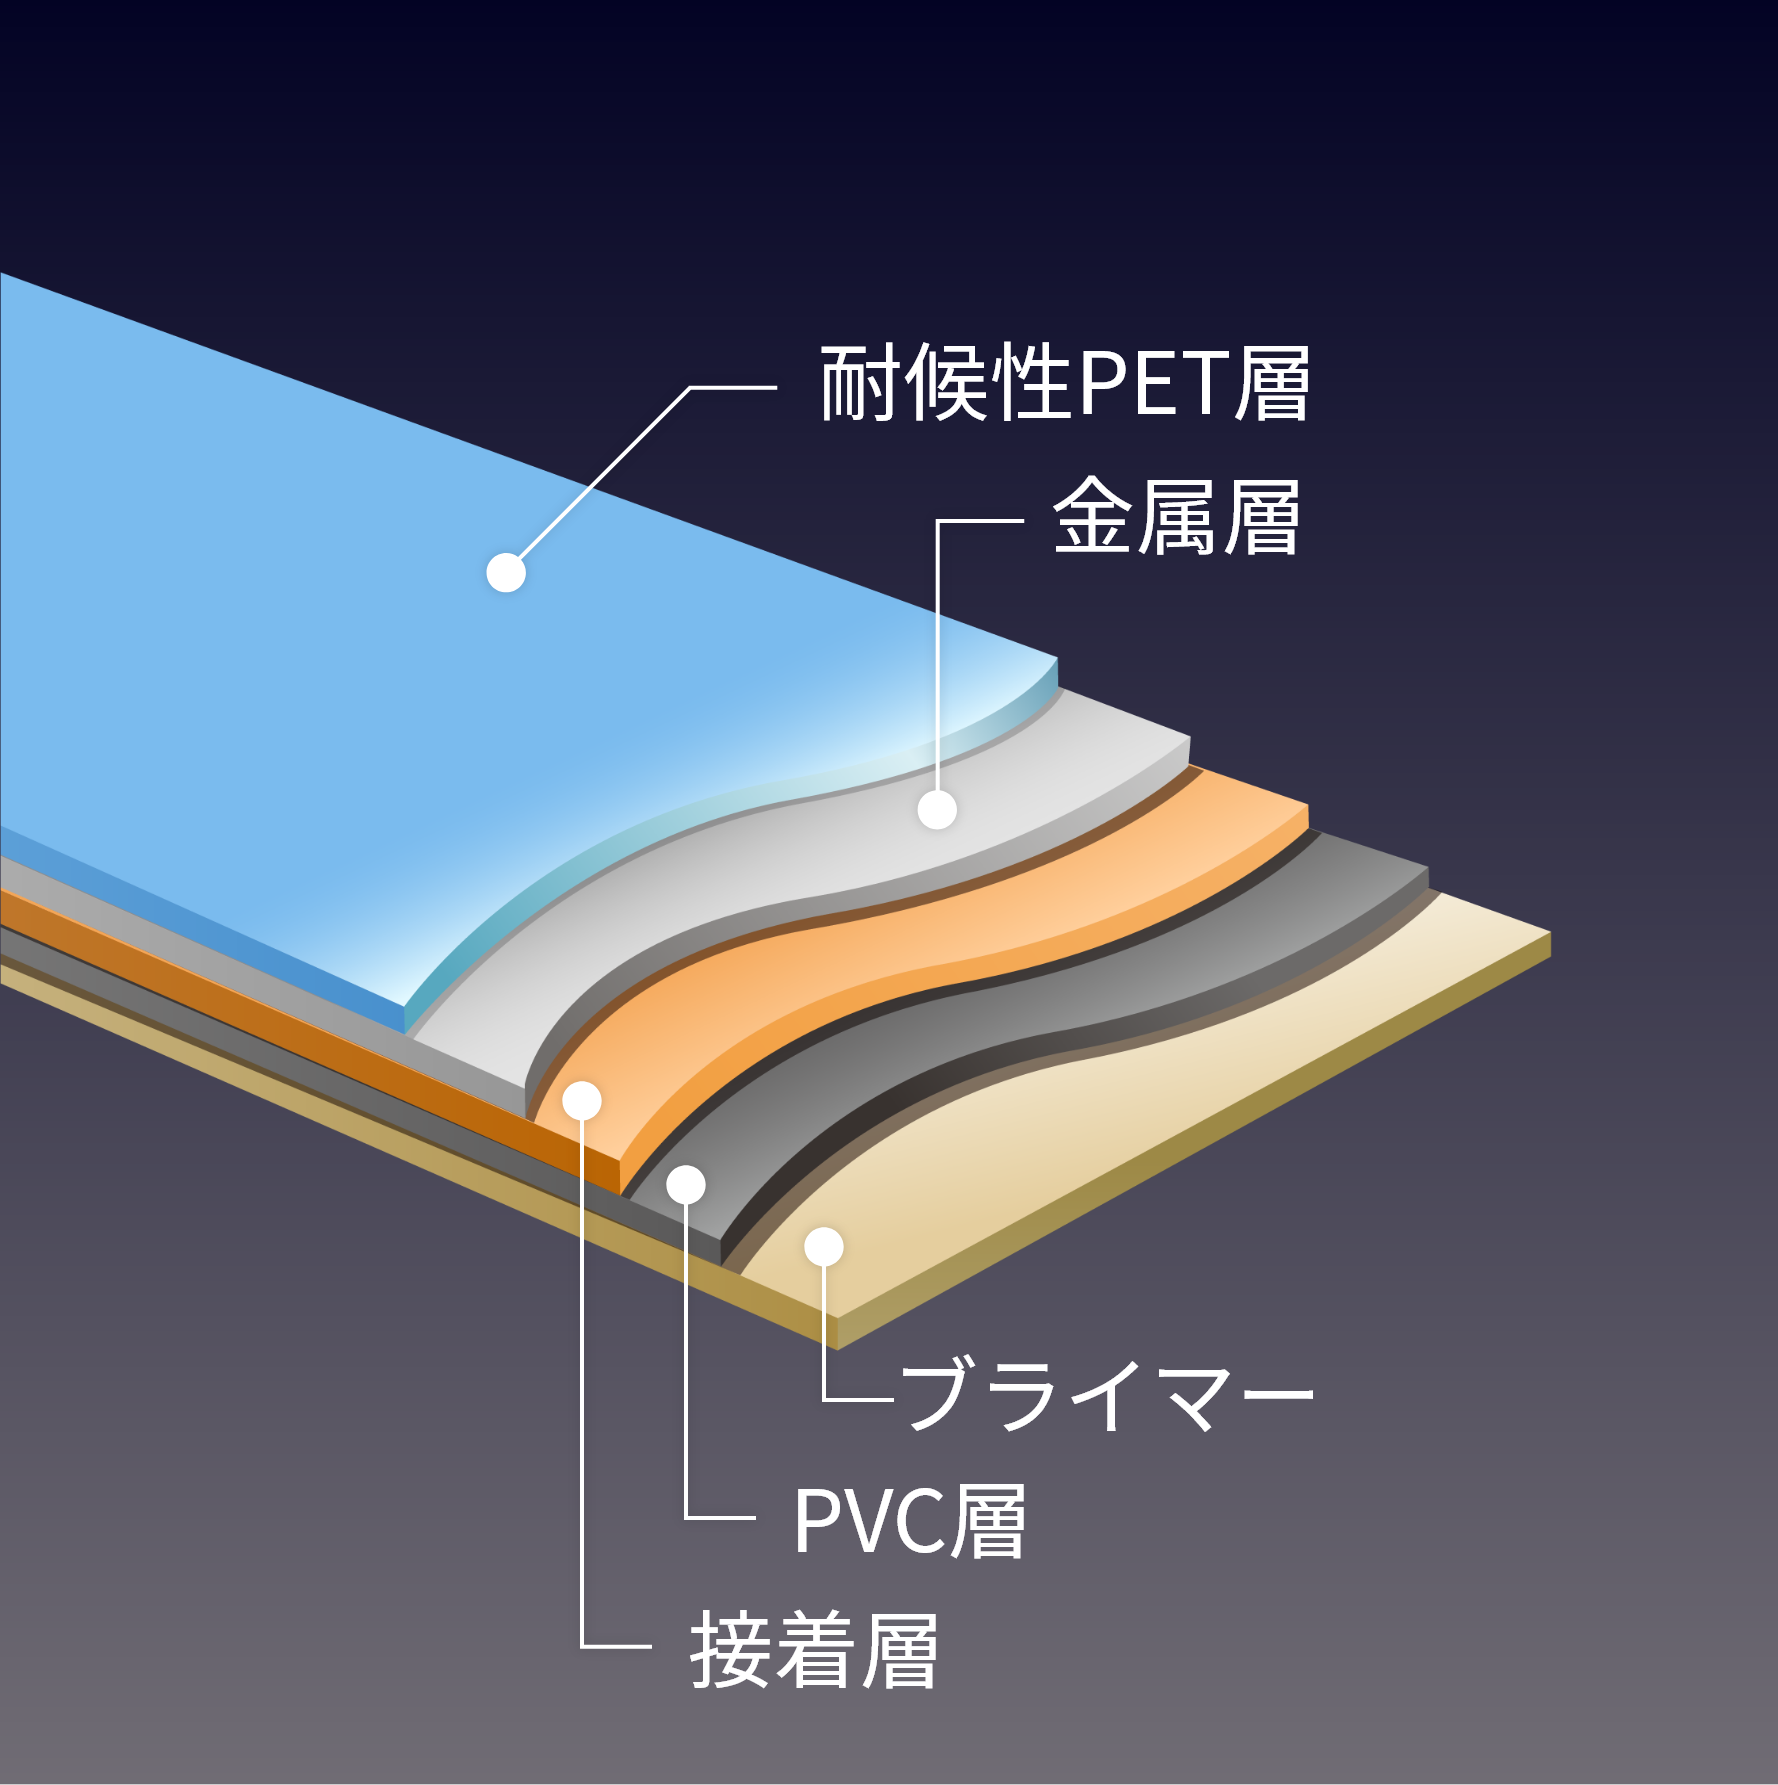 耐候性PET層・金属層・接着層・PVC層・ブライマー
                        